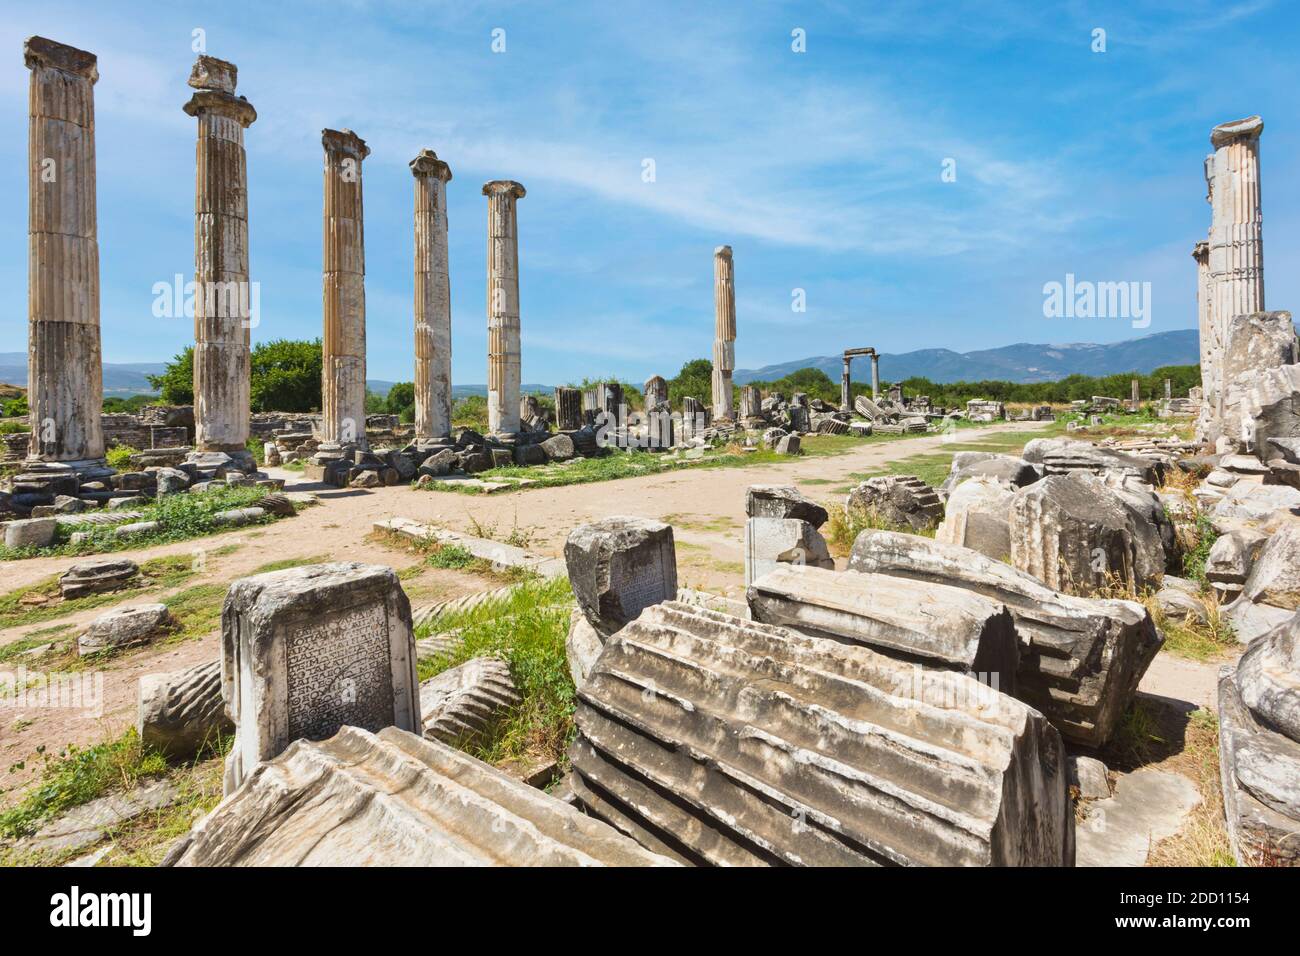 Ruinen von Aphrodisias, Provinz Aydin, Türkei. Ruinen des Tempels der Aphrodite. Aphrodisias, das zum UNESCO-Weltkulturerbe gehört, wurde eingeweiht Stockfoto